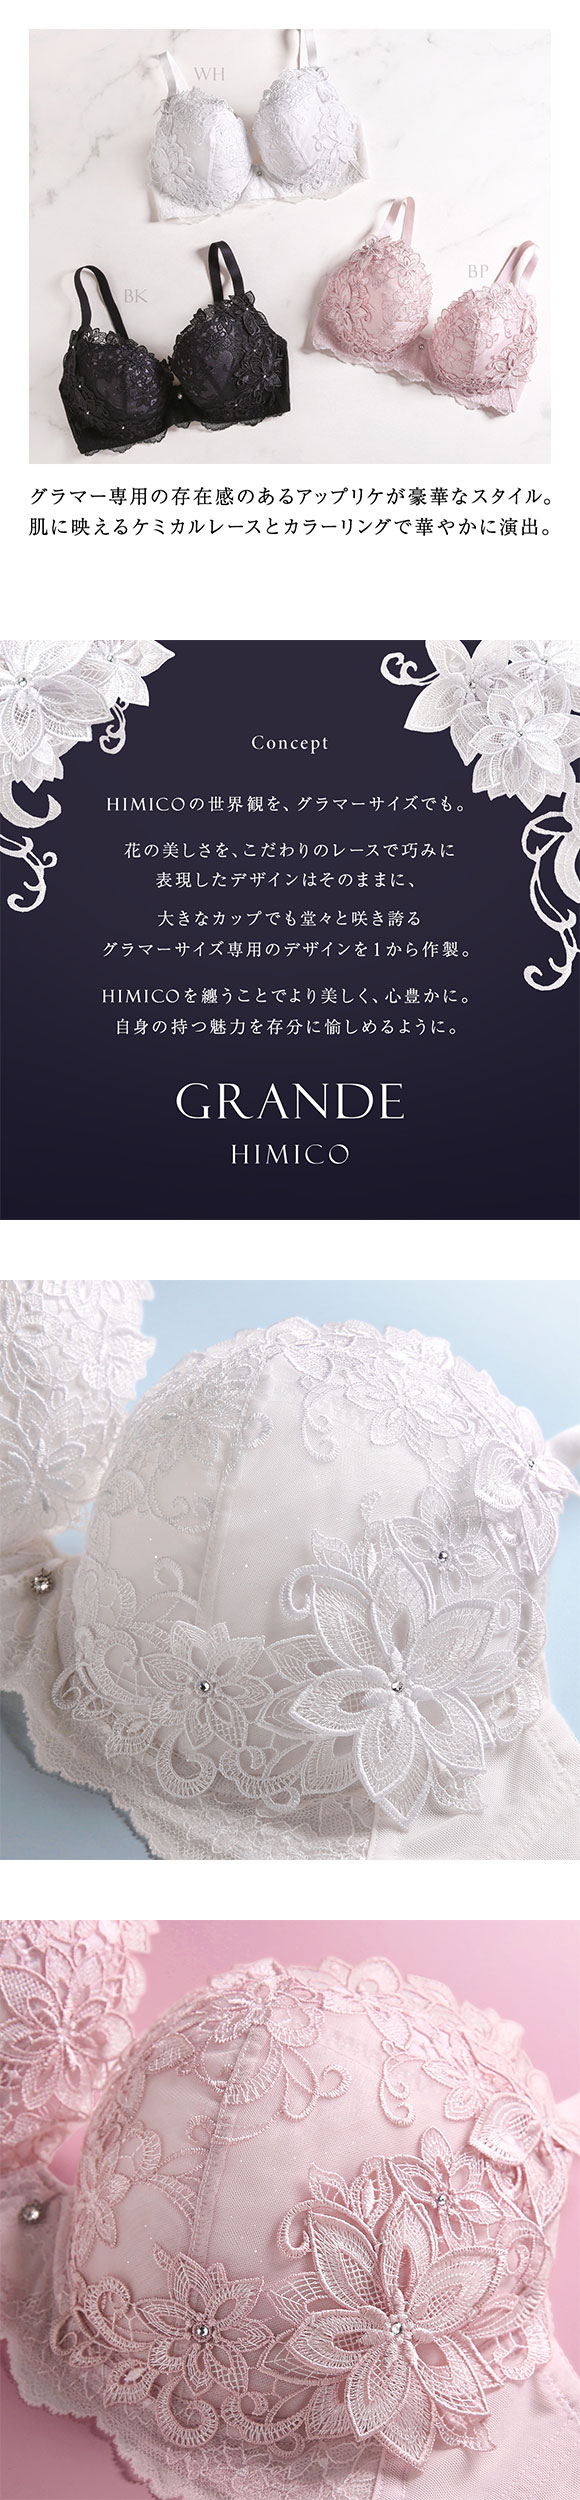 HIMICO GRANDE 003 ブラジャー 大きいサイズ GHI 65-85 Dalia Stellato 単品 グラマーサイズ